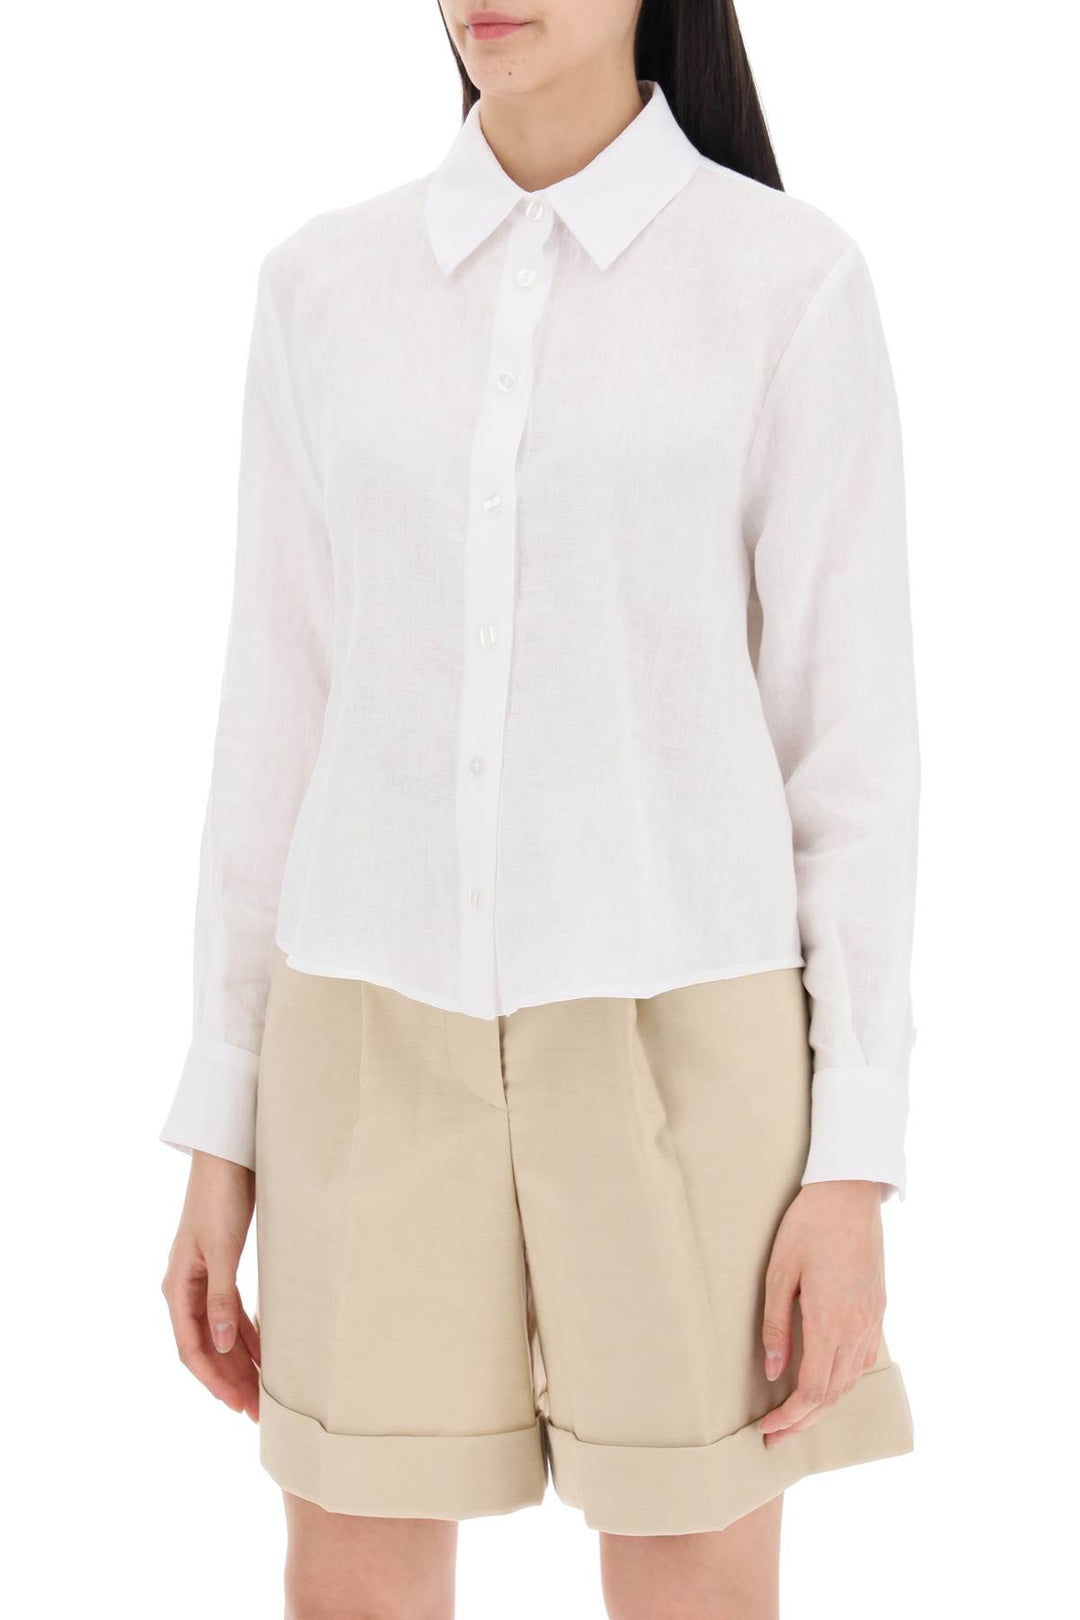 Mvp Wardrobe St Raphael Linen Shirt For Men   Bianco